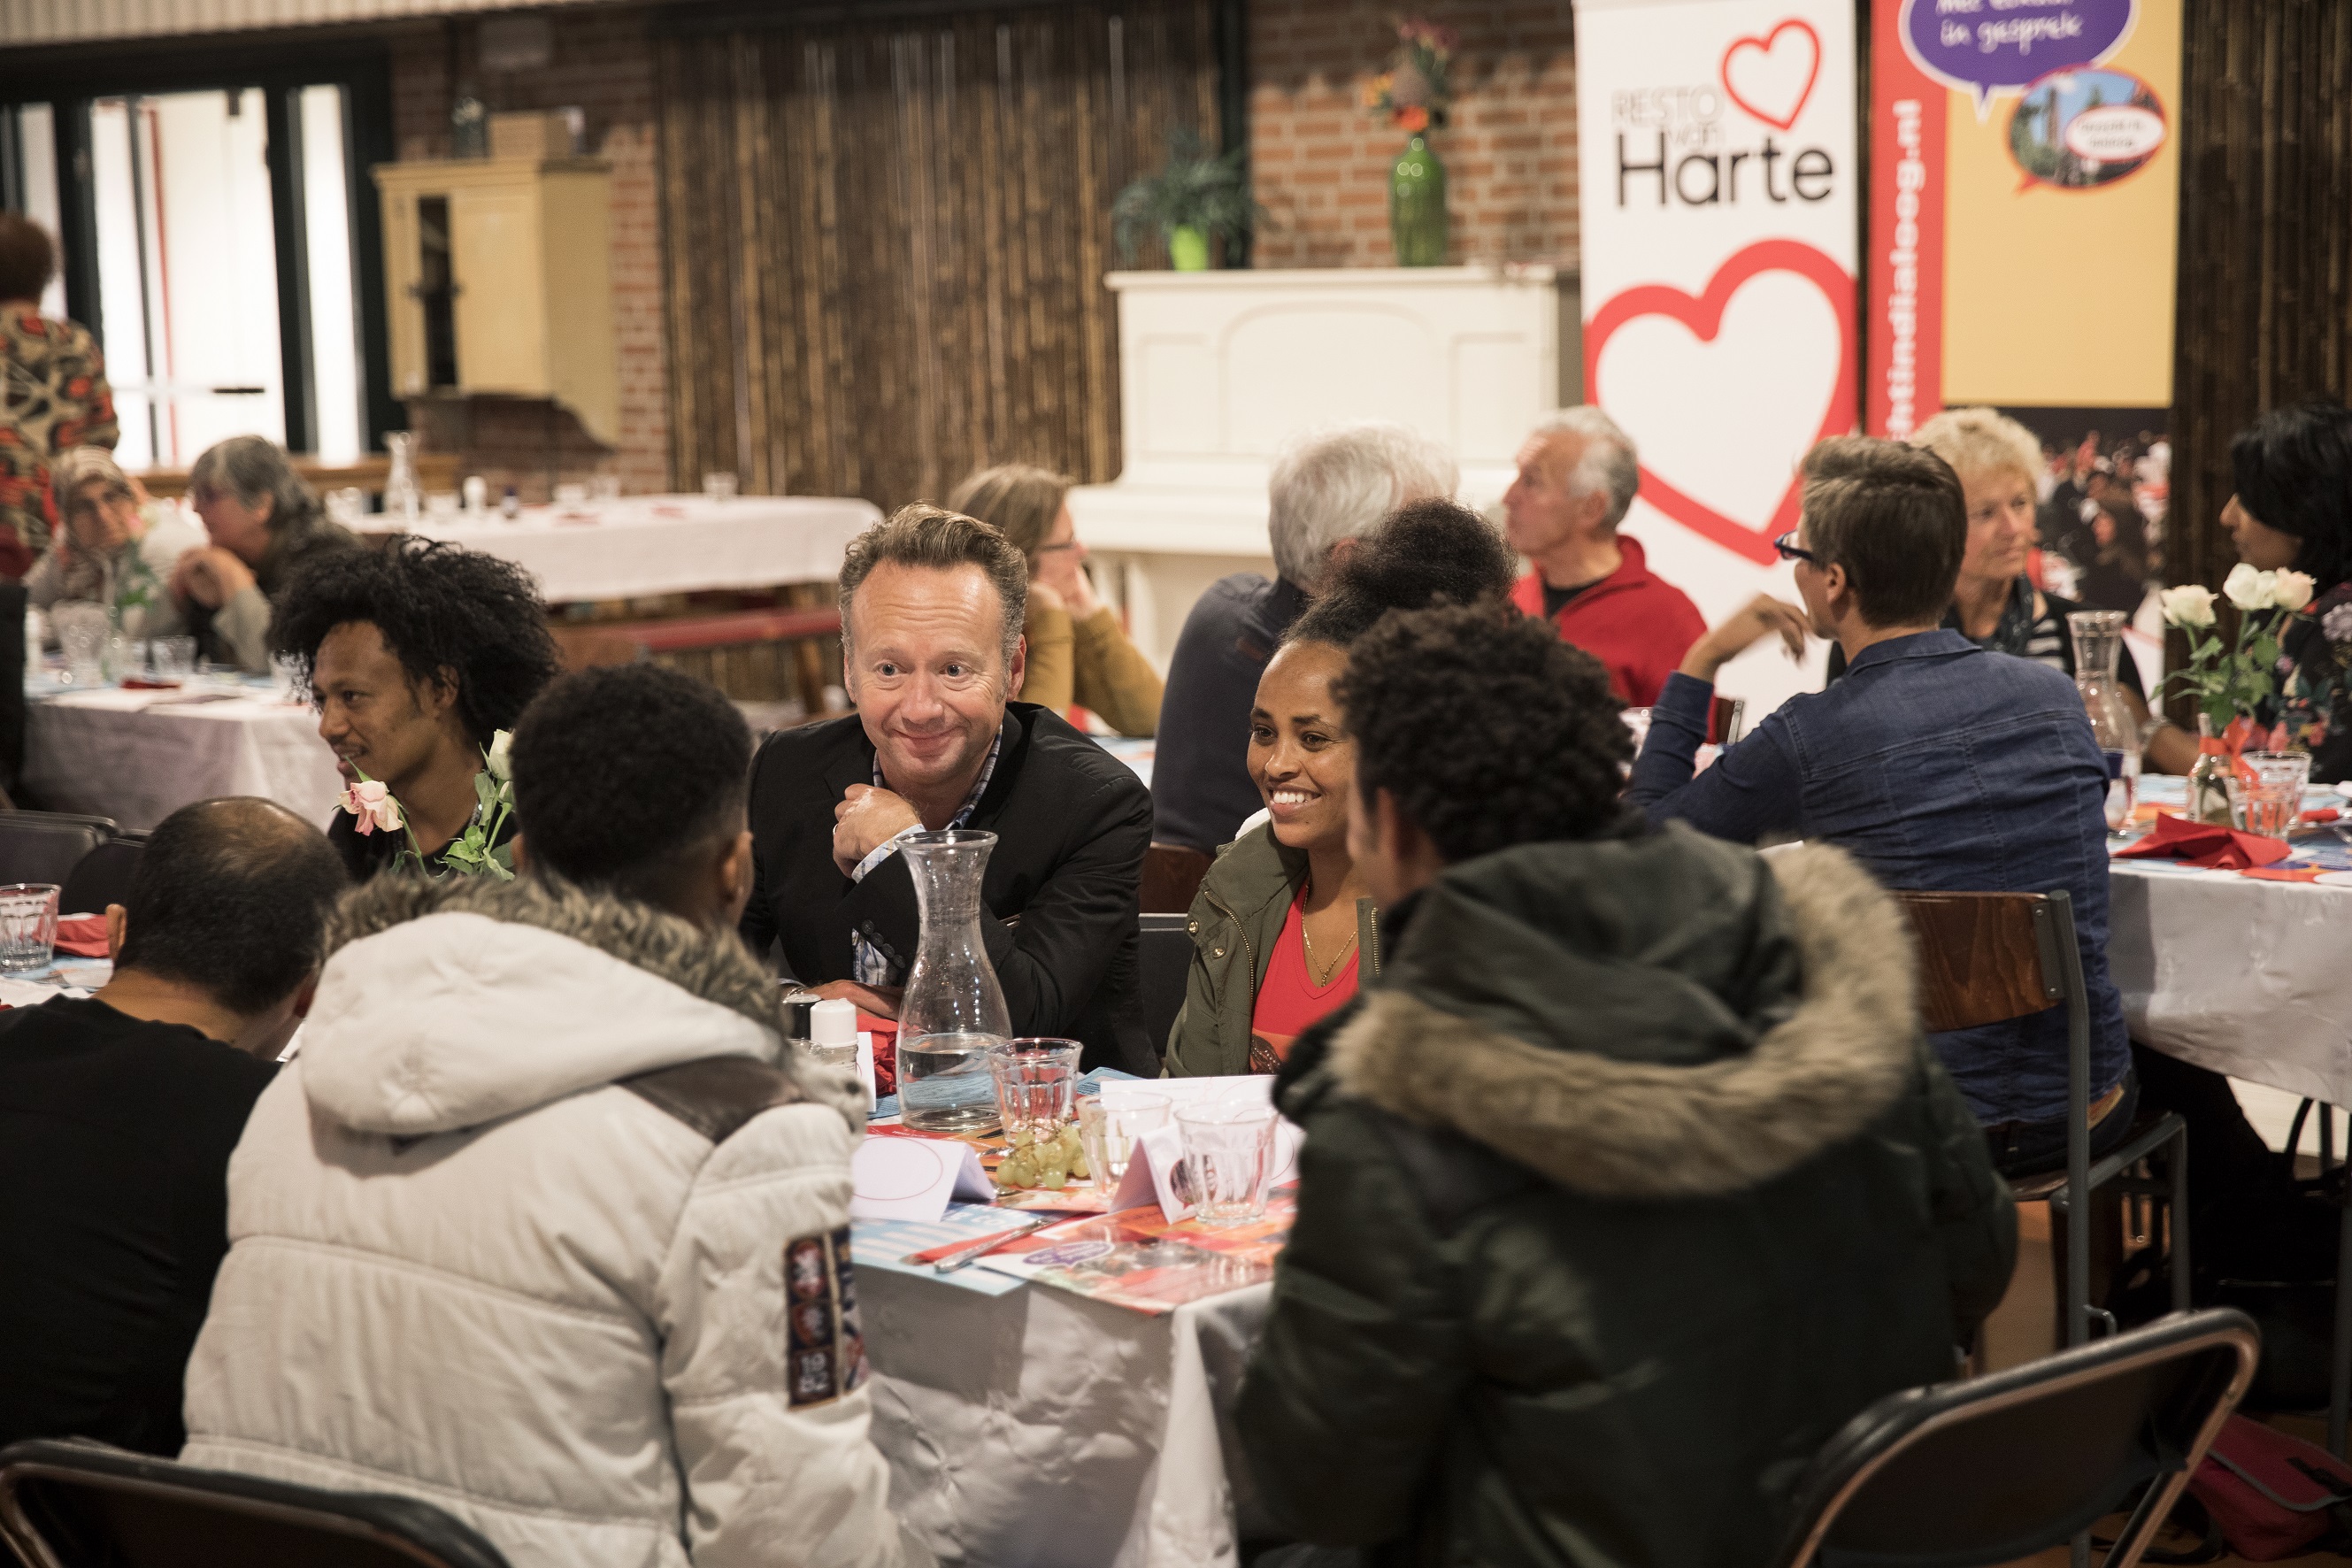 Op deze foto is Joris Linssen te zien, hij zit met een groepje mensen aan tafel in een restaurant van Resto VanHarte